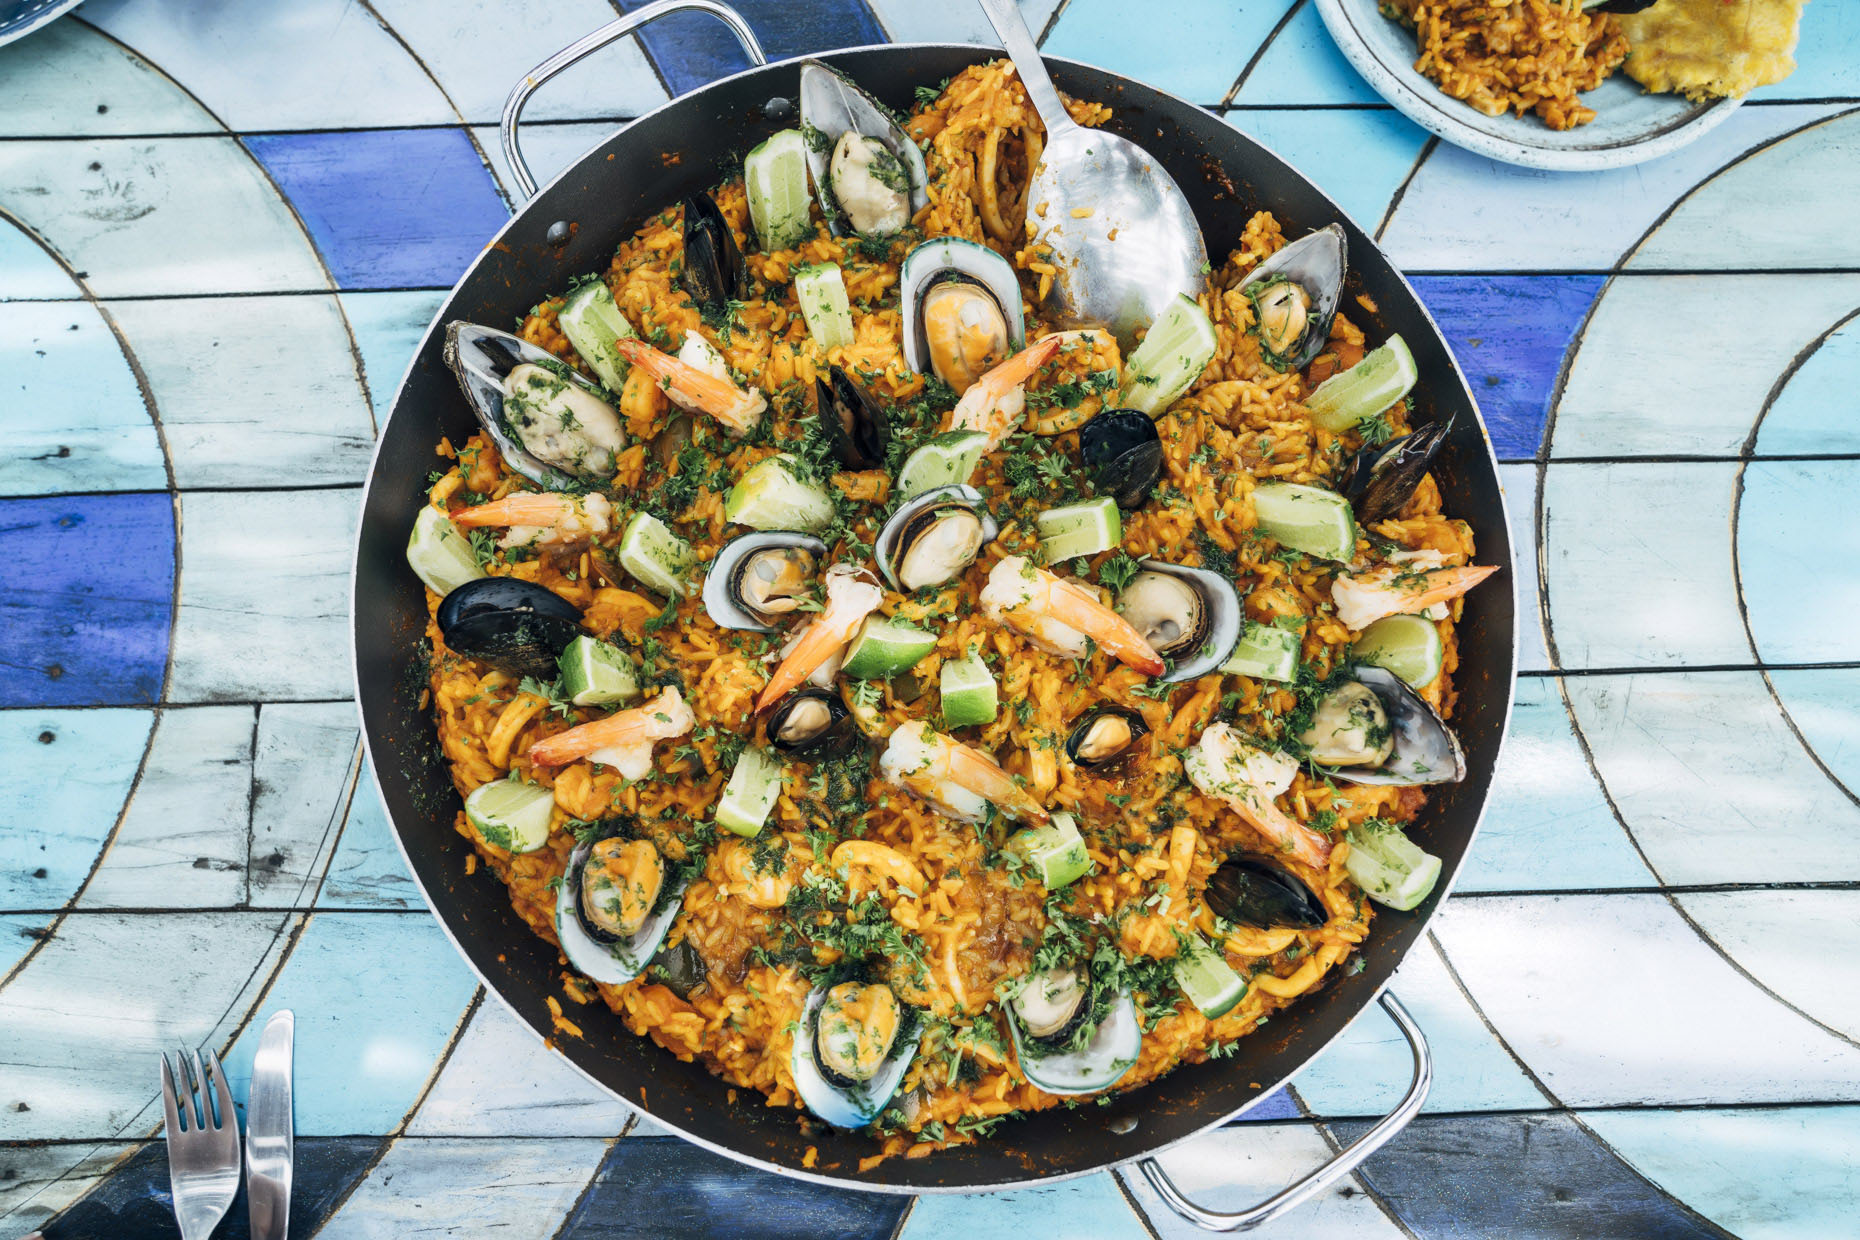 Pan of seafood Paella